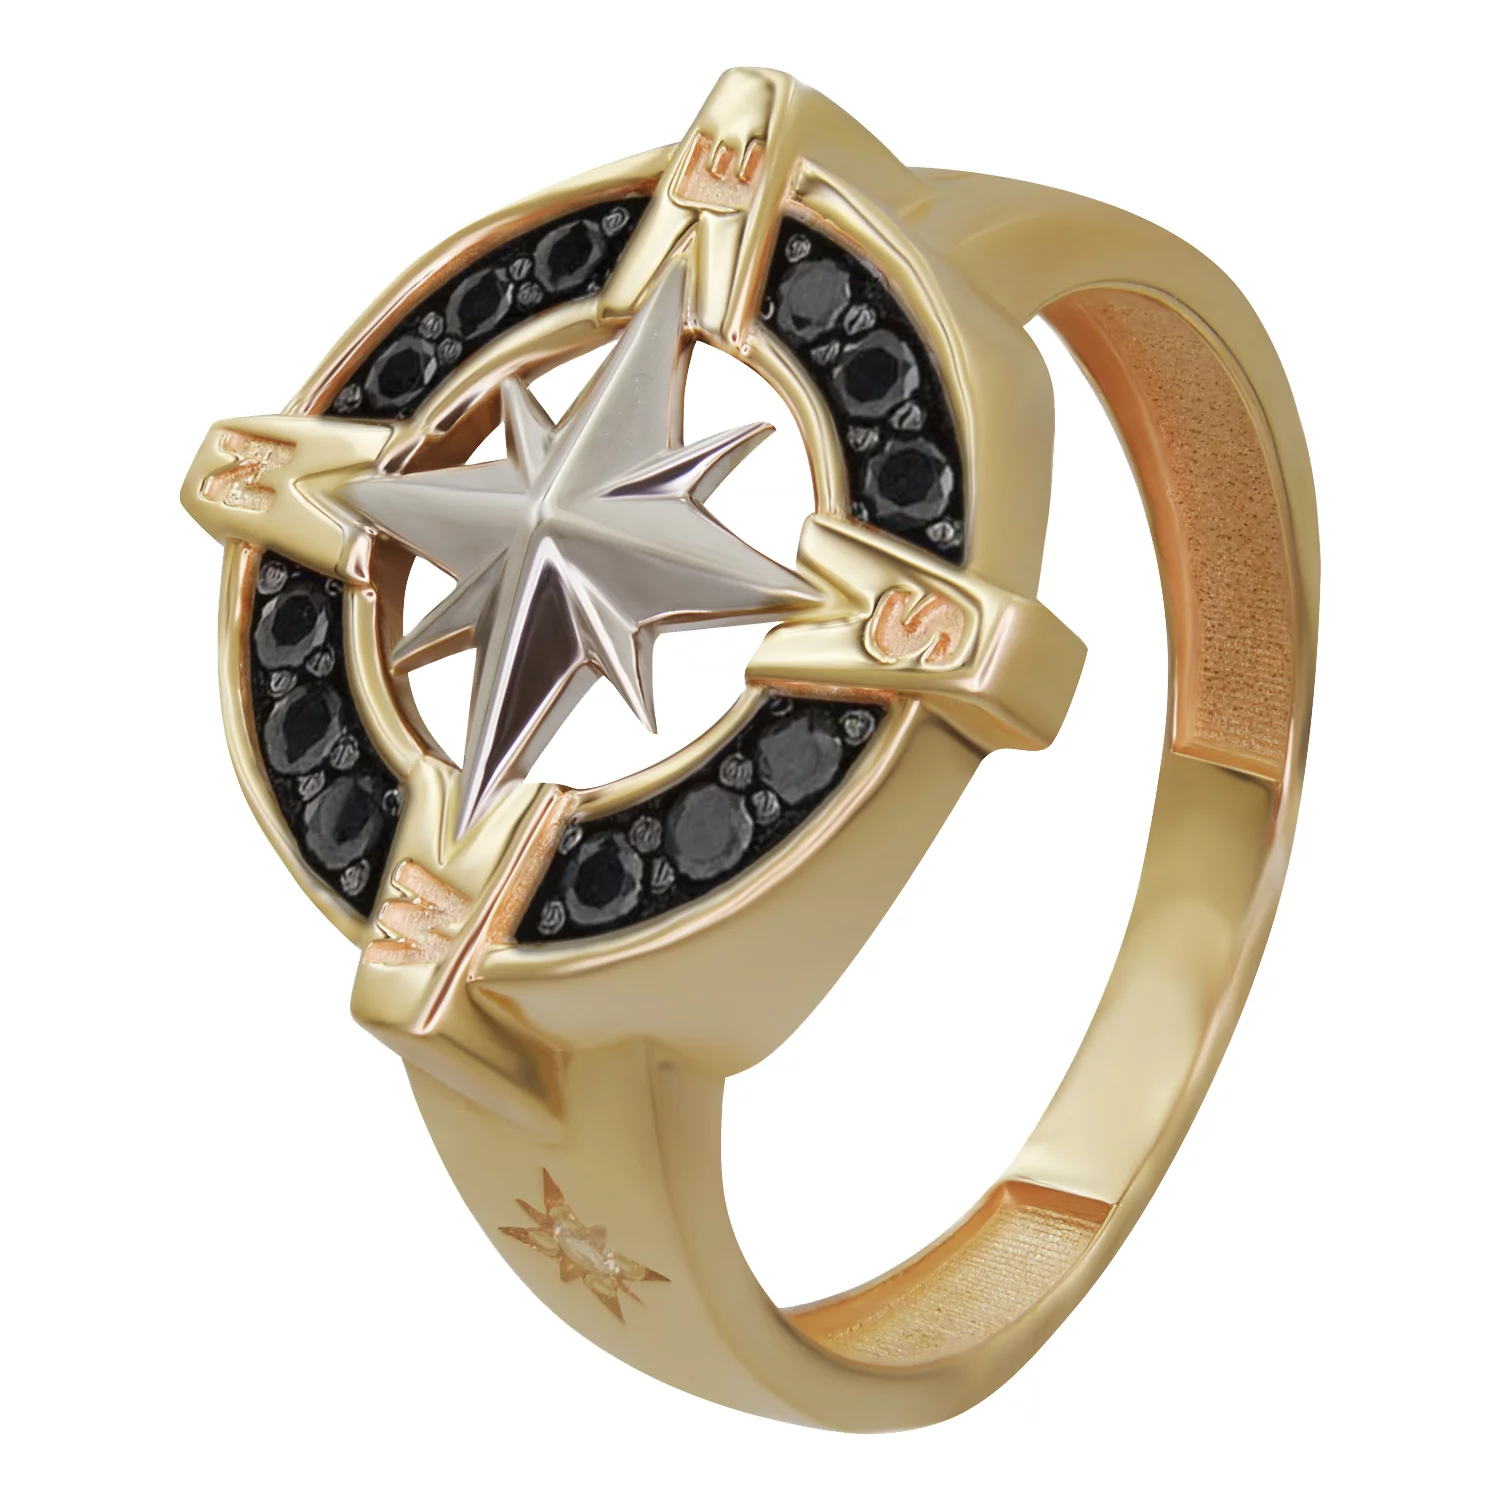 Перстень из комбинированного золота с фианитом Компас. Артикул КП001ч: цена, отзывы, фото – купить в интернет-магазине AURUM